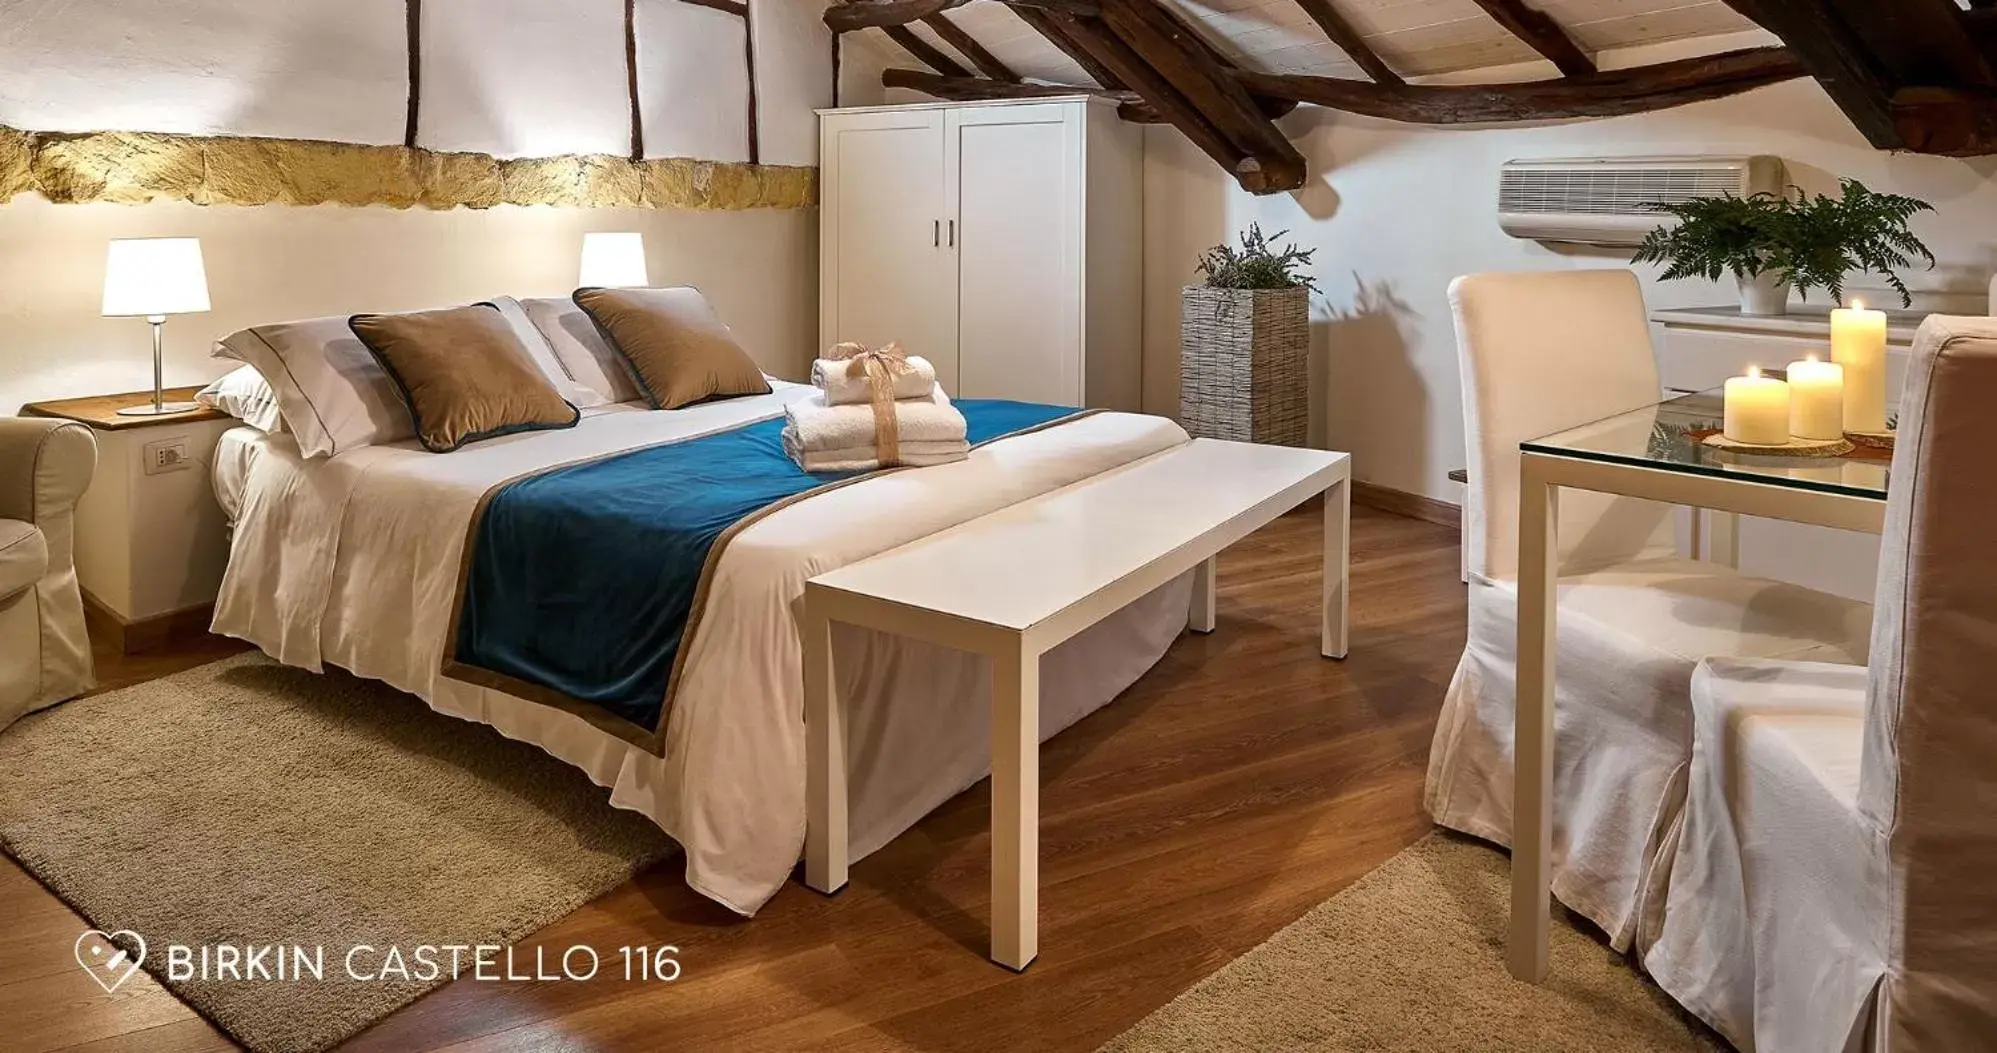 Bed in Albergo Diffuso Birkin Castello